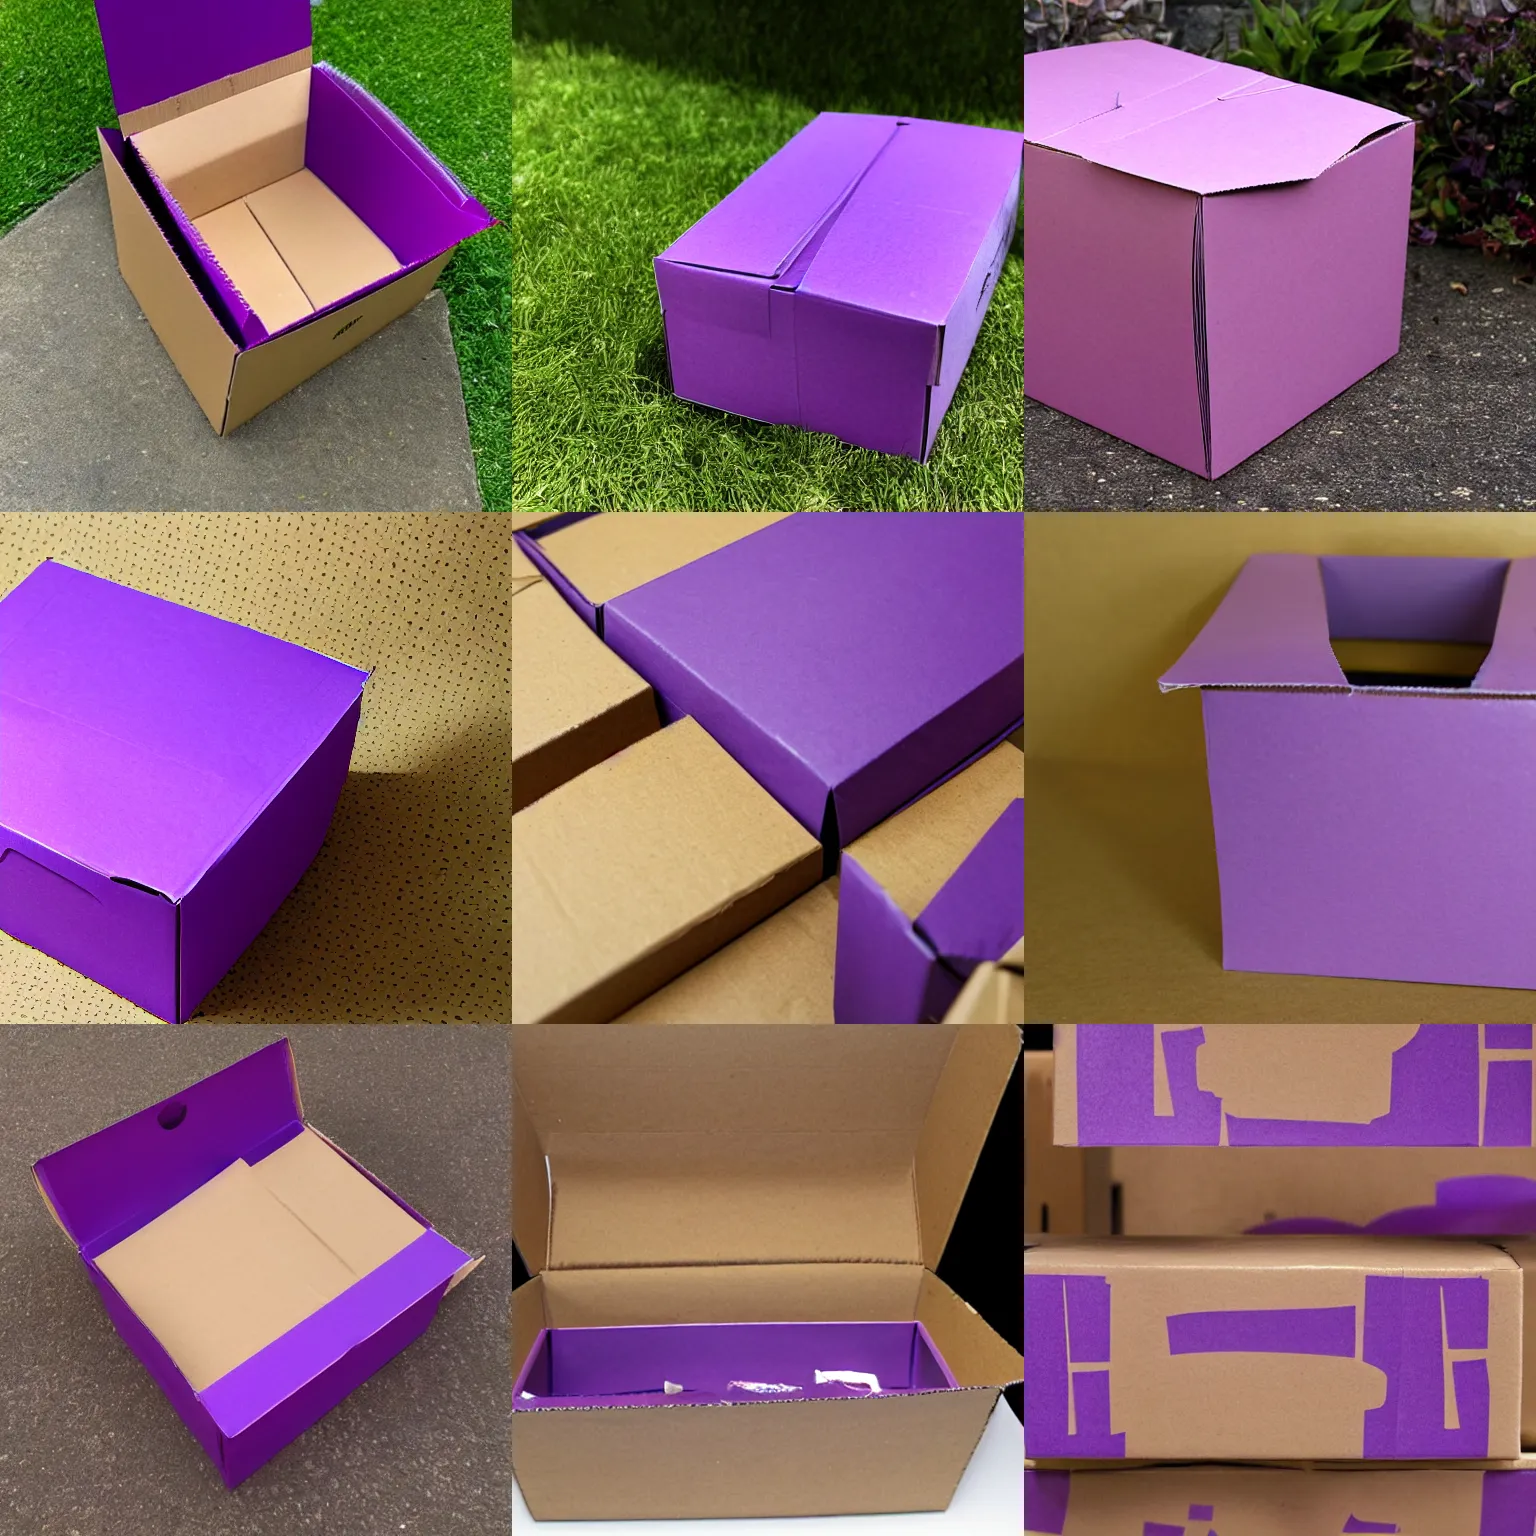 Prompt: purple cardboard box